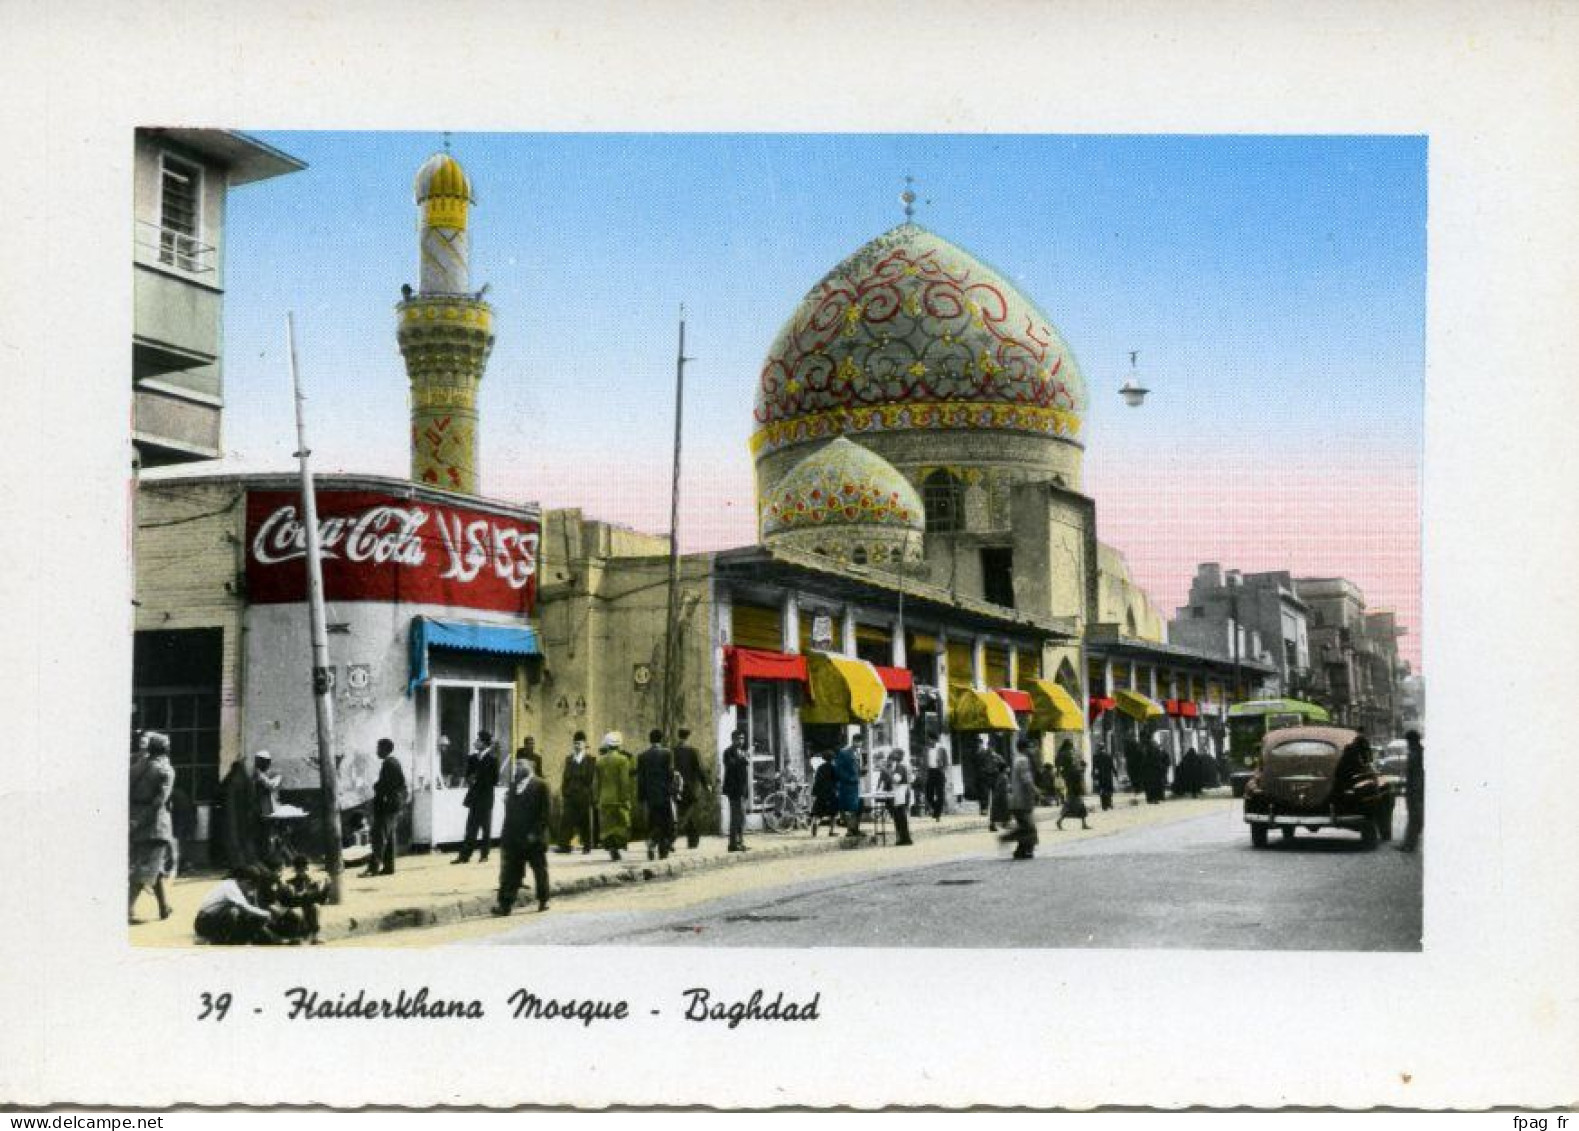 Bagdad (Iraq - Irak) - 39 - Haiderkhana Mosque - Sattar A.Al-Kutubi - Rashid Street - Iraq